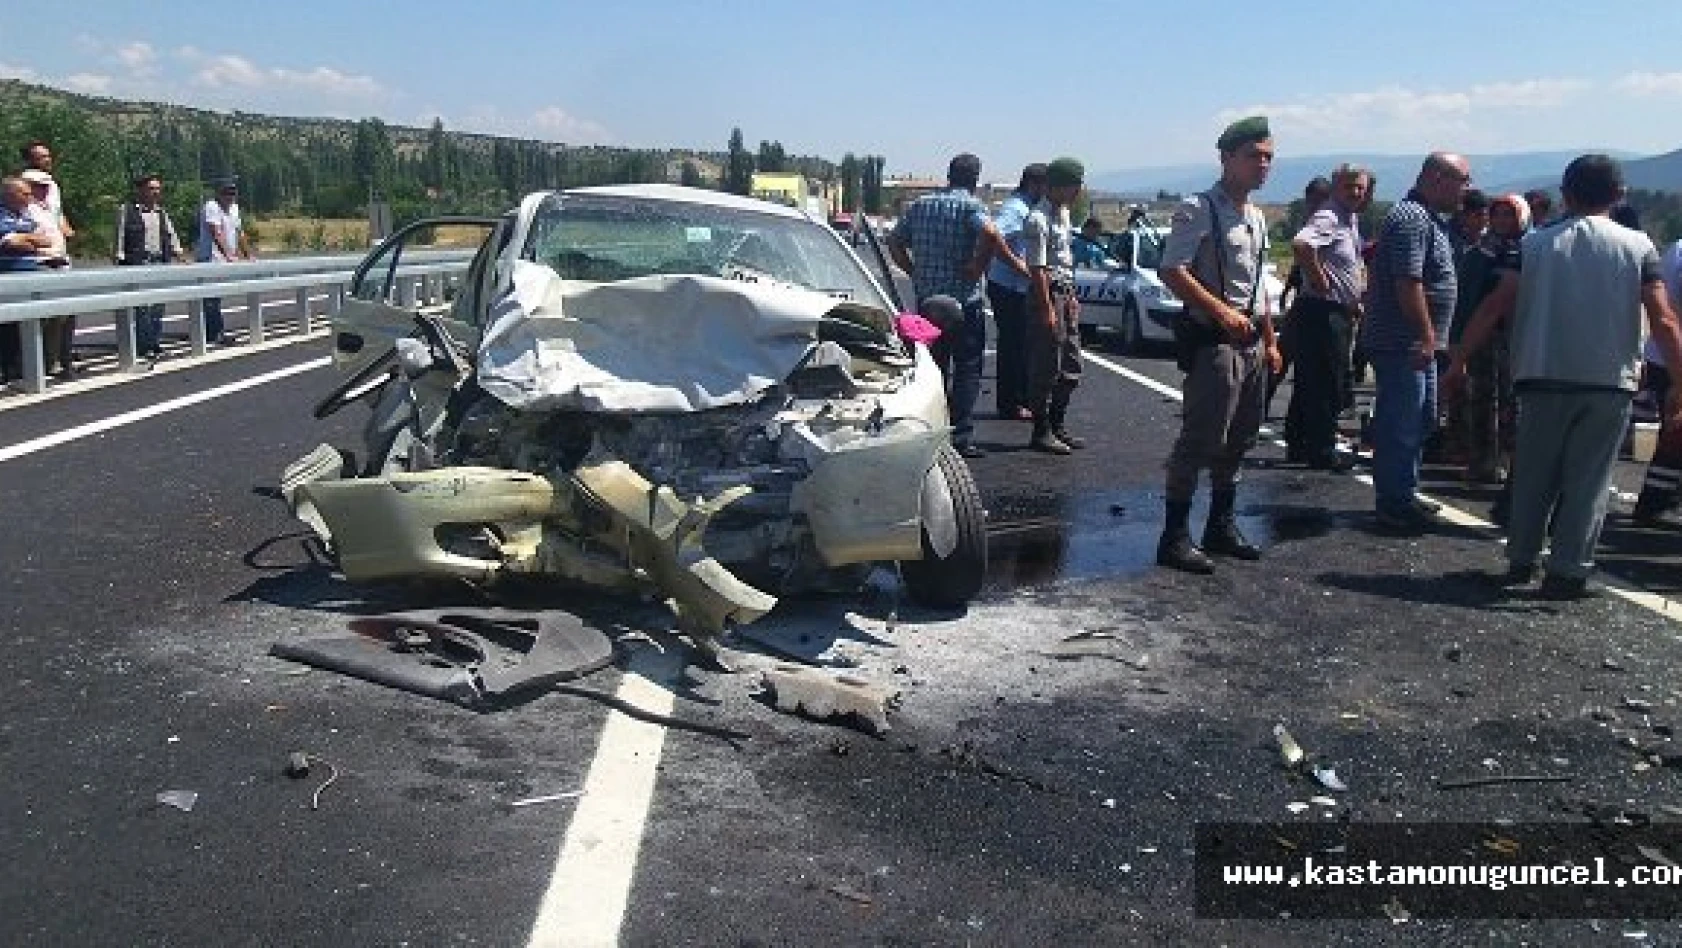 Kastamonu'da Feci Kaza: 7 Yaralı